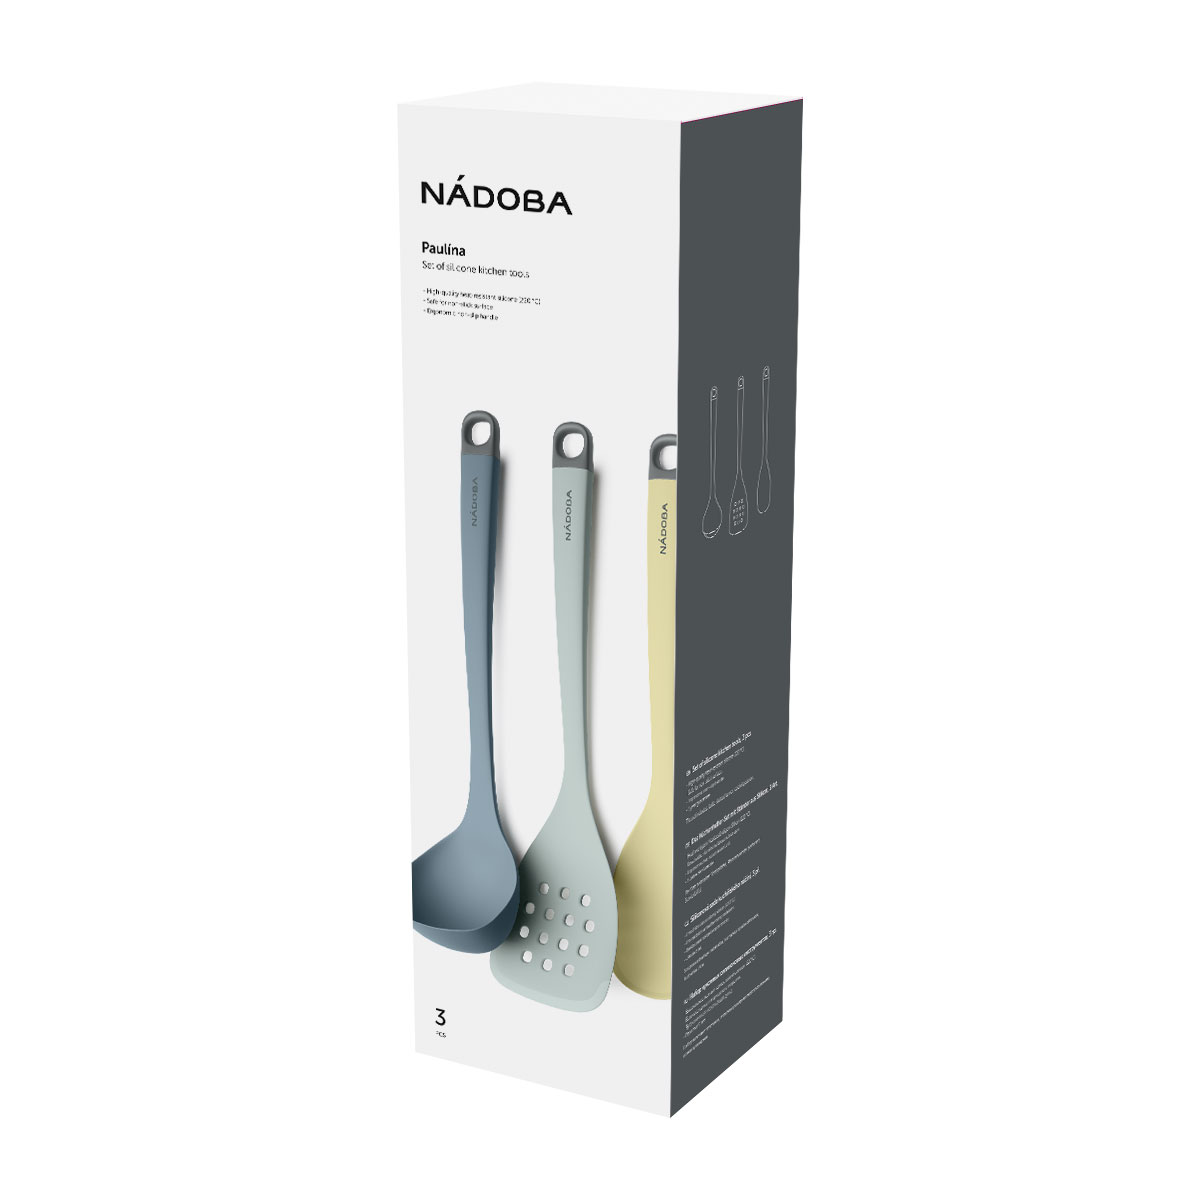 Набор кухонных силиконовых инструментов, 3 пр., NADOBA, серия Paulina – купить в Москве, цены в интернет-магазинах на Мегамаркет